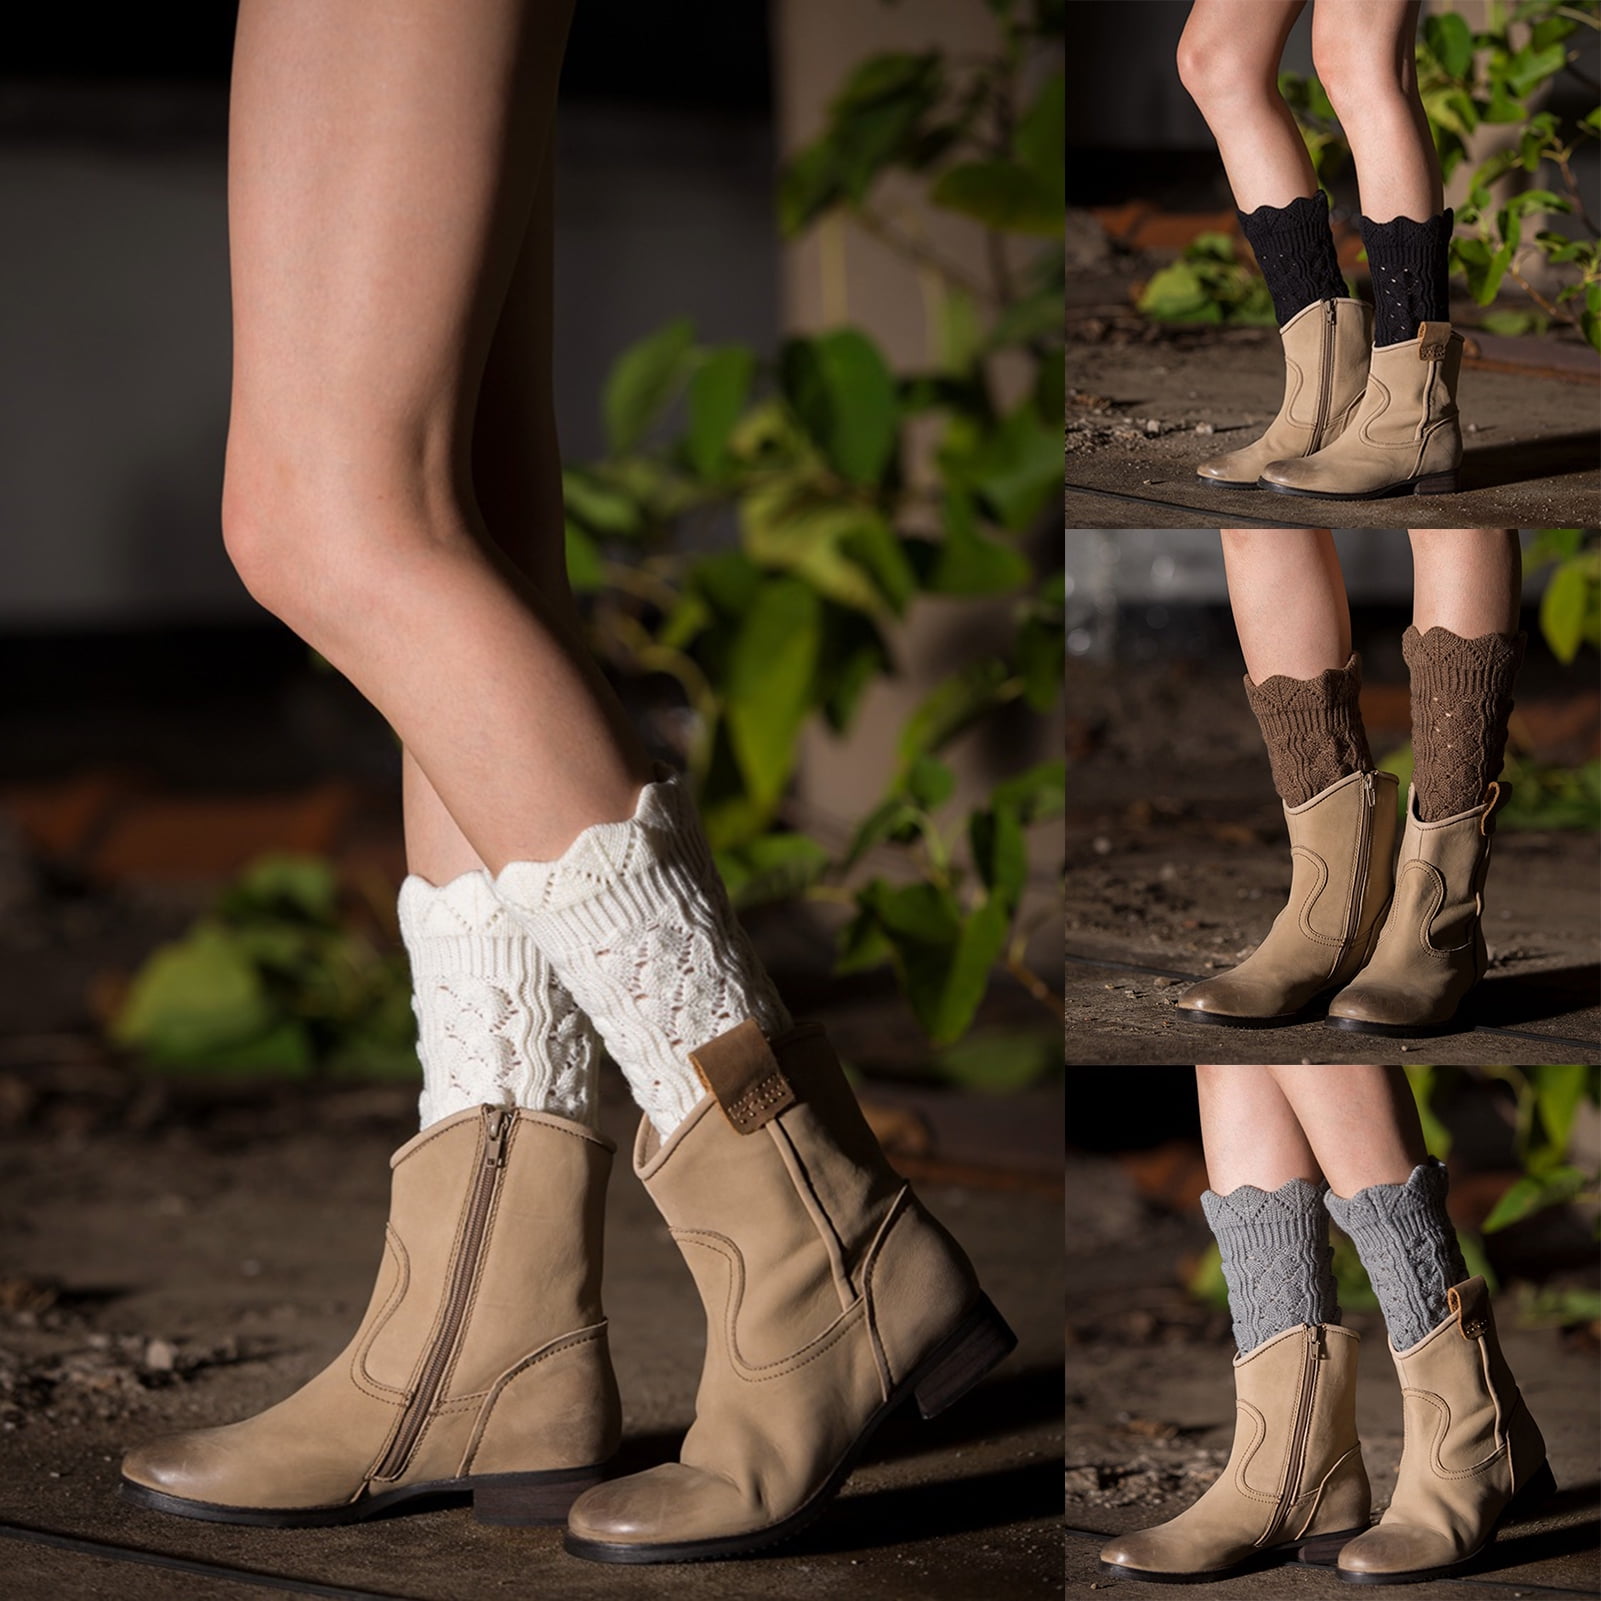 Mens Women's Crochet Boot Cuffs Socks Boot Toppers Warmers Socks Faux Leg Hot UK 